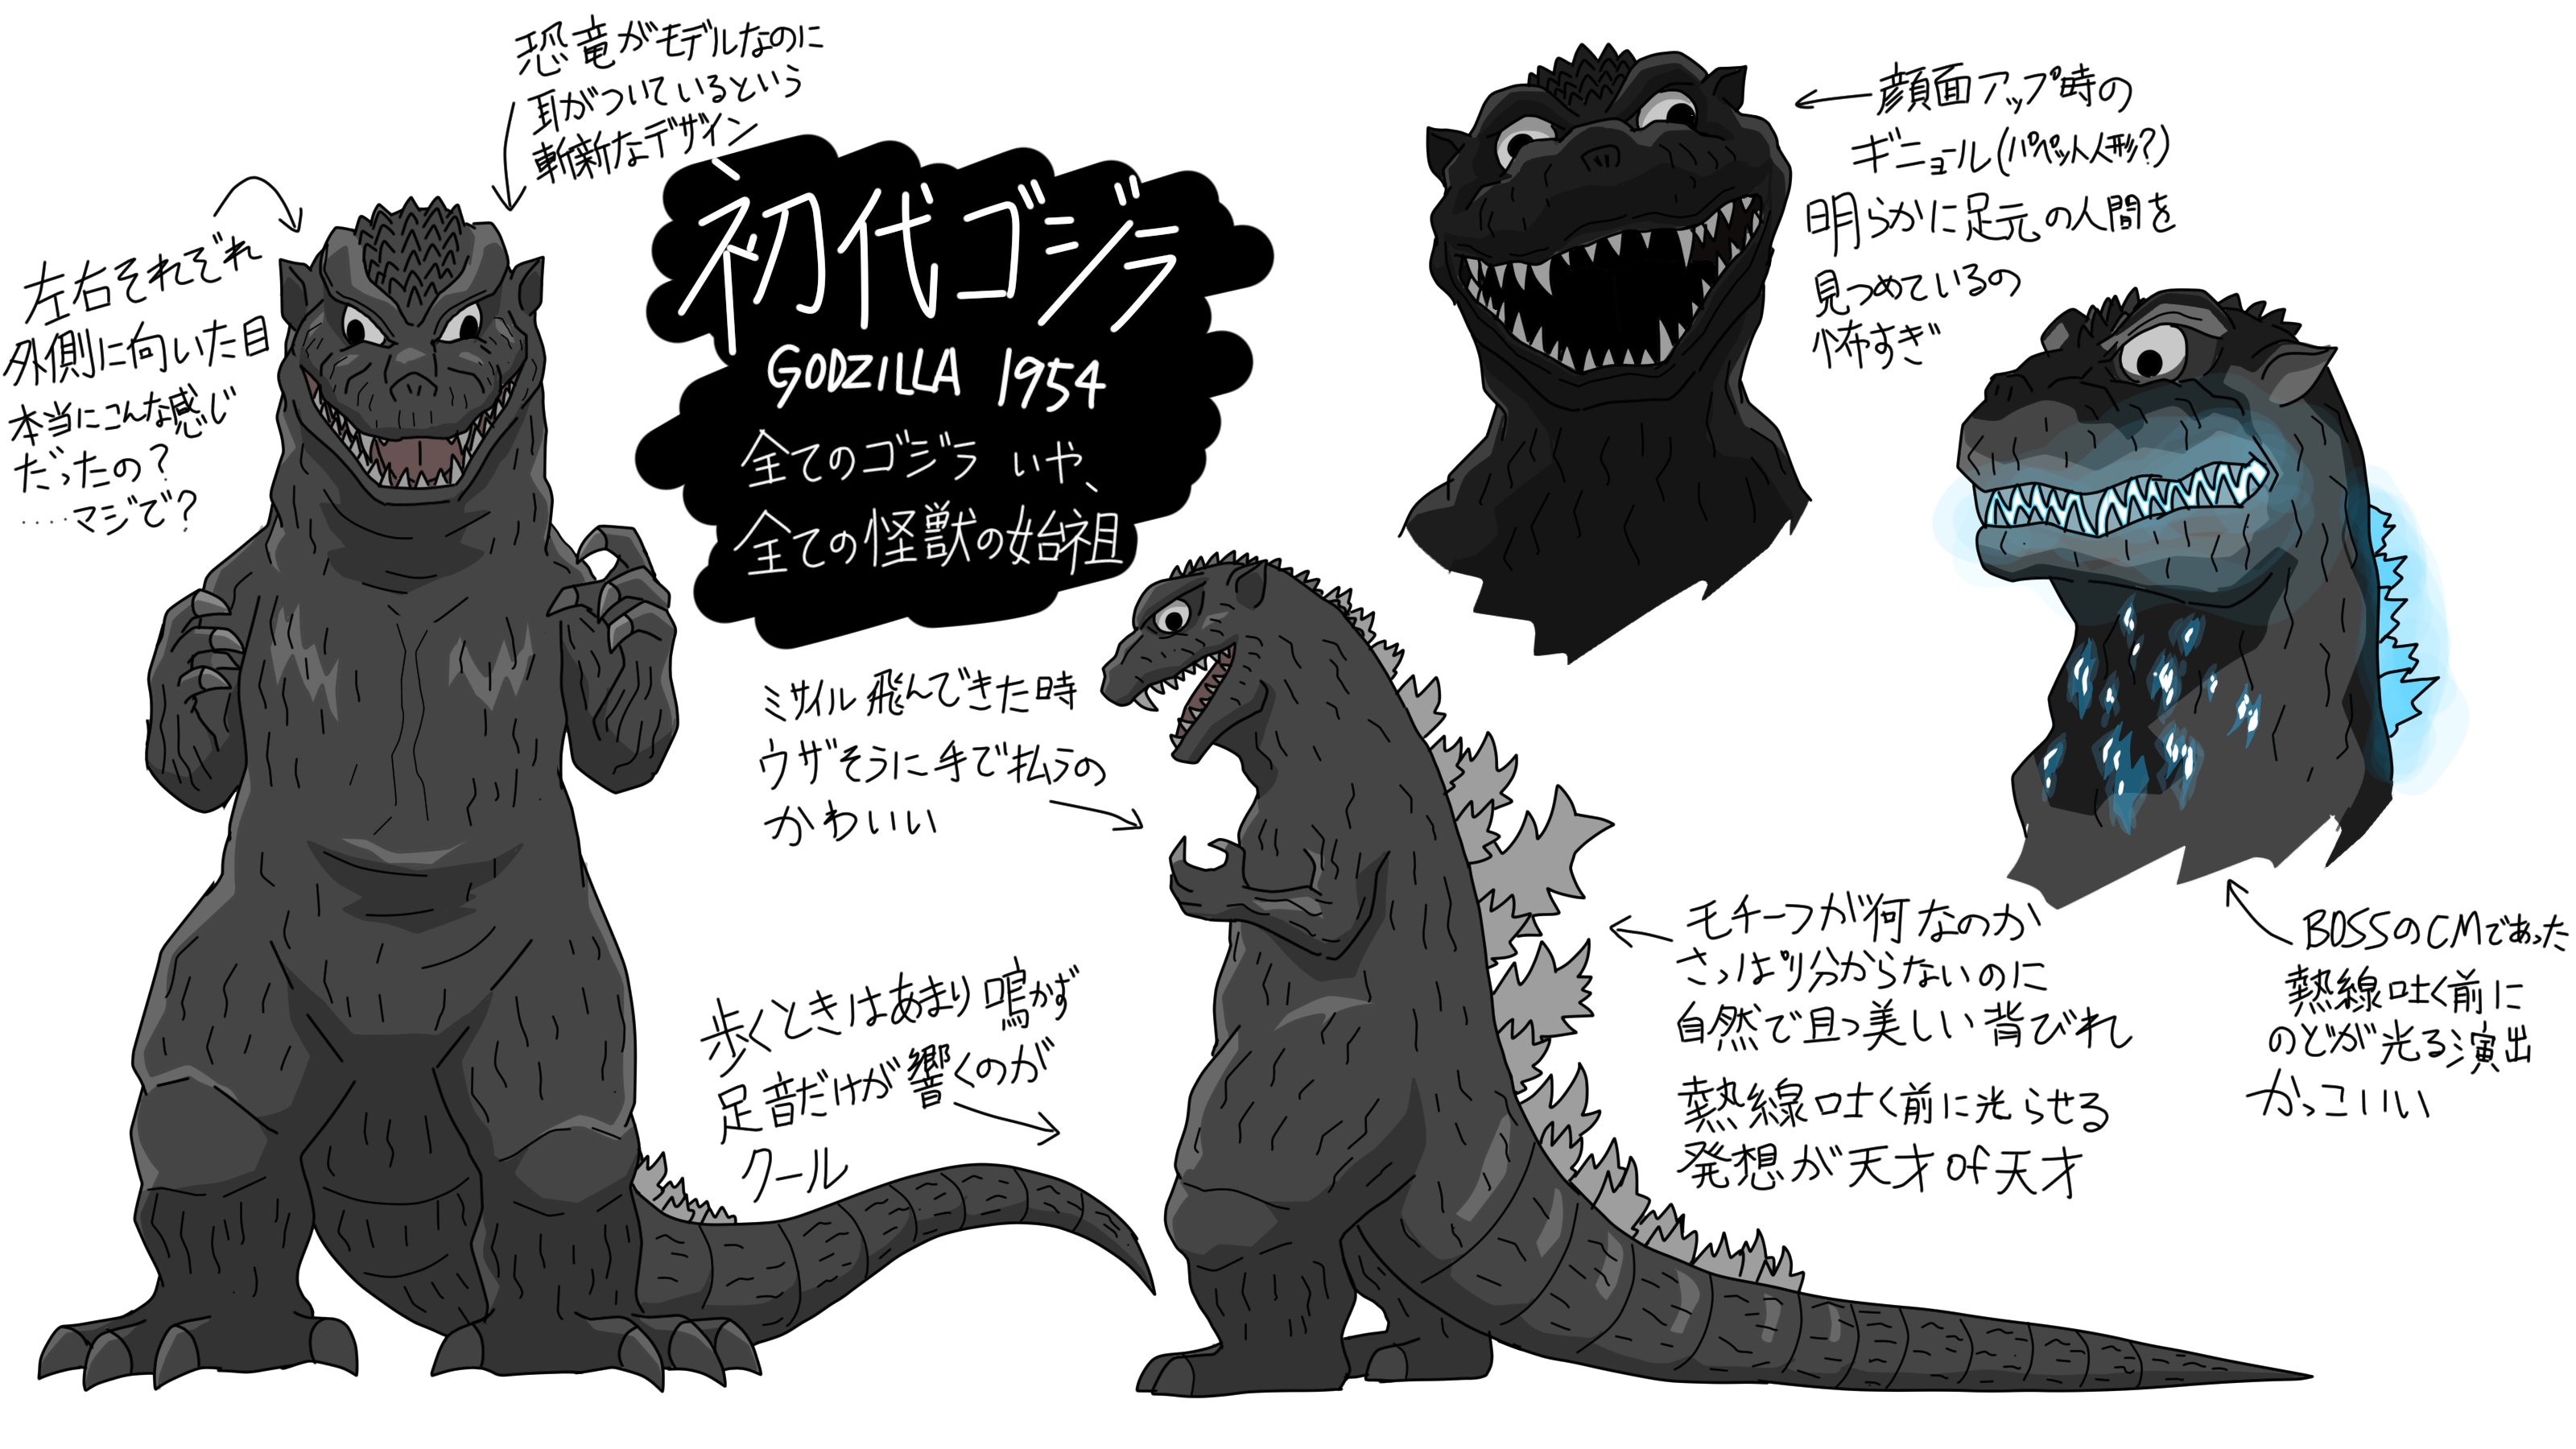 猫怪獣ノラ Twitter वर 初代ゴジラ デフォルメイラスト練習 ゴジラ Godzilla T Co Fqjy2bfdm7 Twitter